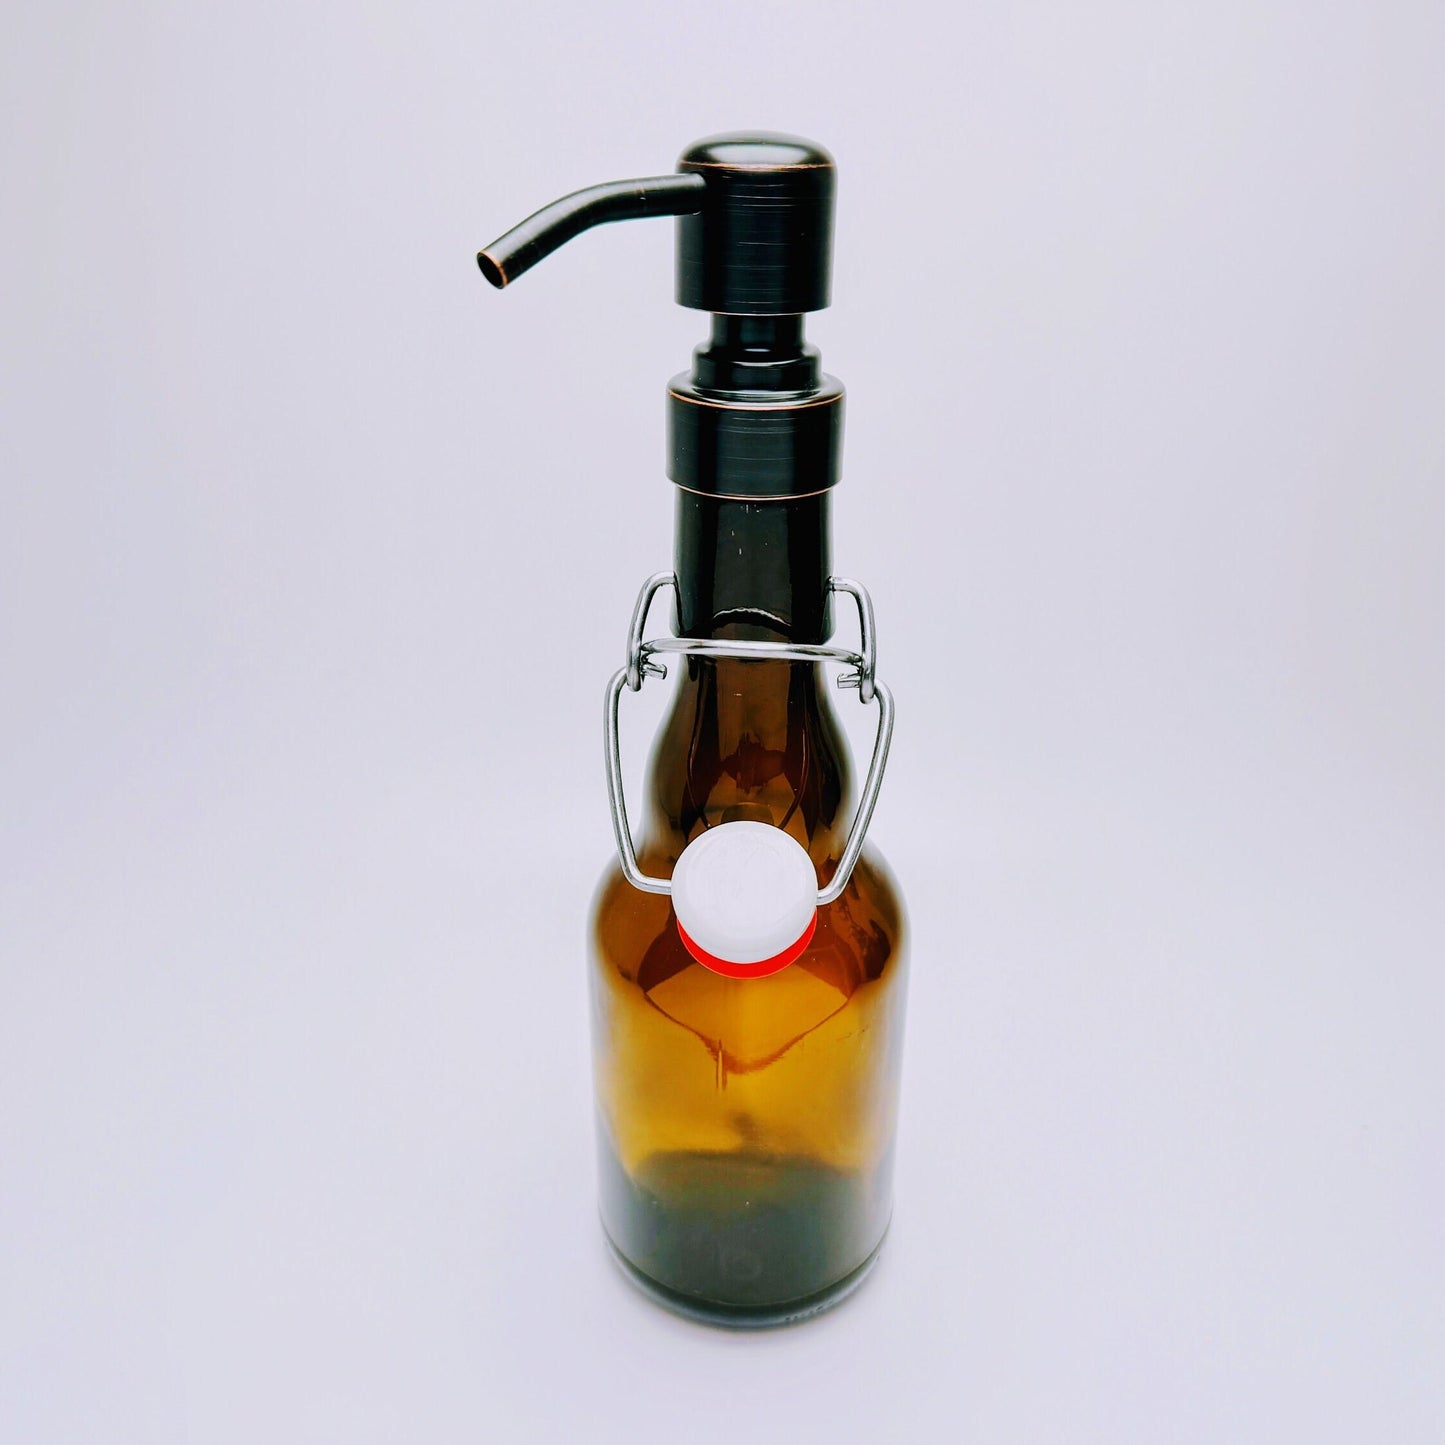 Seifenspender aus Bier-Bügelflaschen - Handgemacht - Upcycling - Nachfüllbarer Pumpspender für Seife, Lotion oder Bartöl - 0,33l